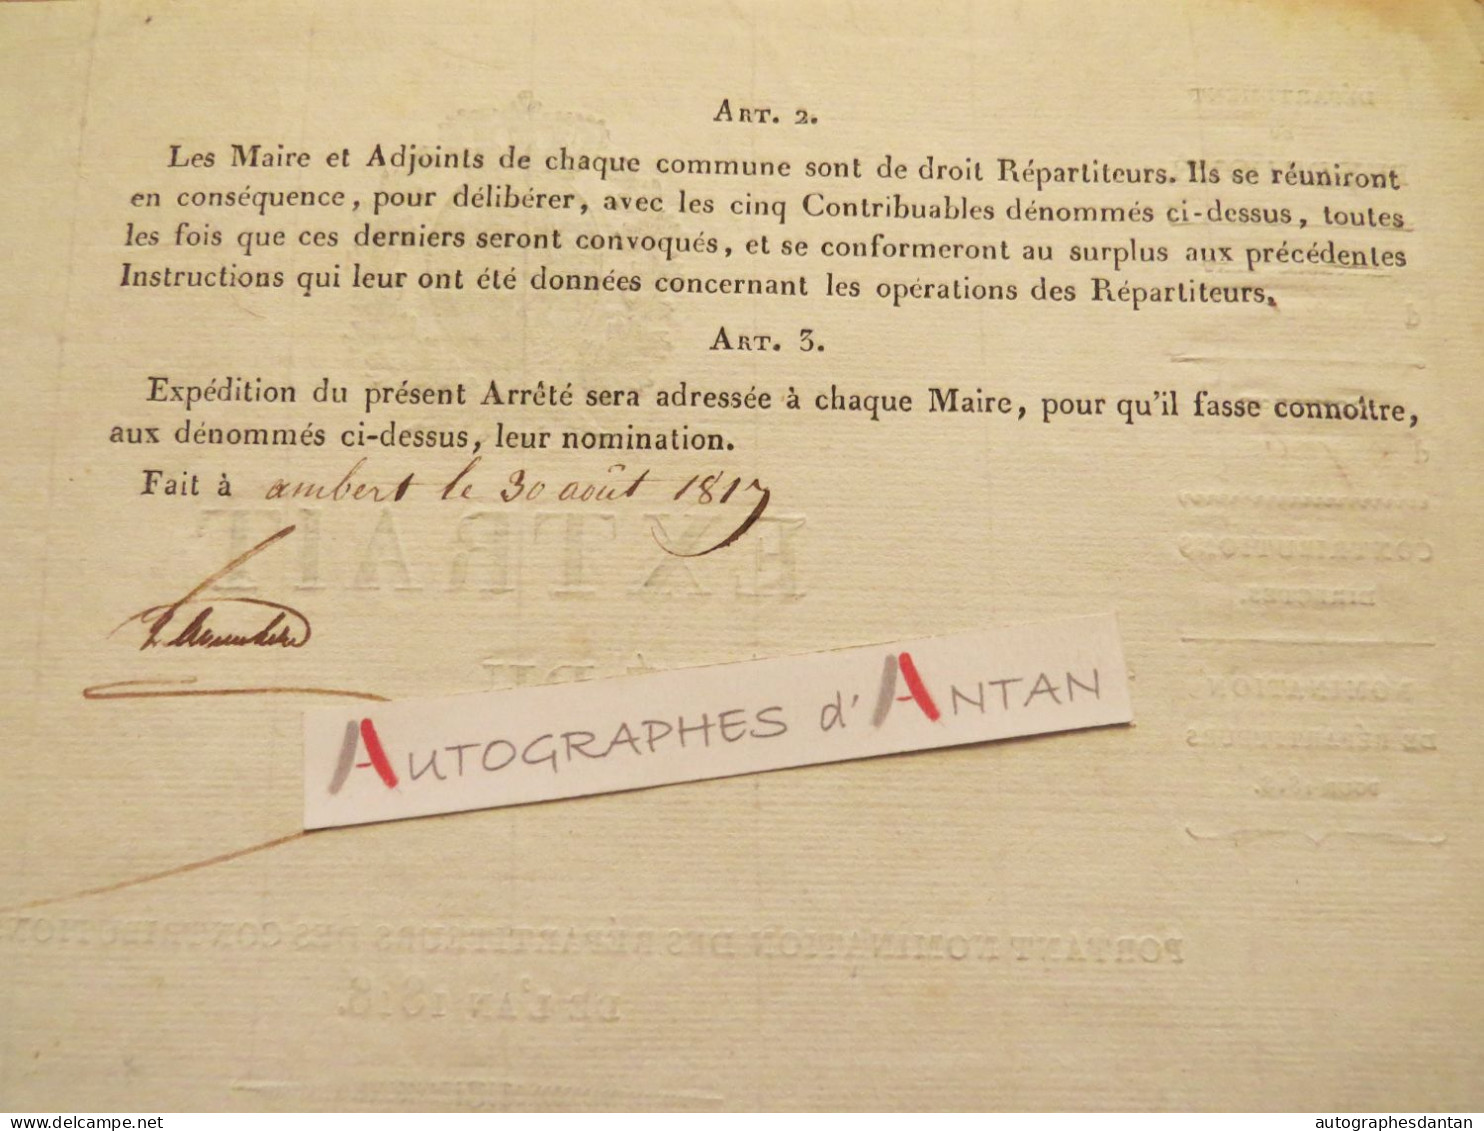 ● Puy De Dôme 1817 / Ambert / Job - Contributions Directes Pour 1818 - Belle Vignette - Mayet Vimal Becherie - 63 - Documents Historiques